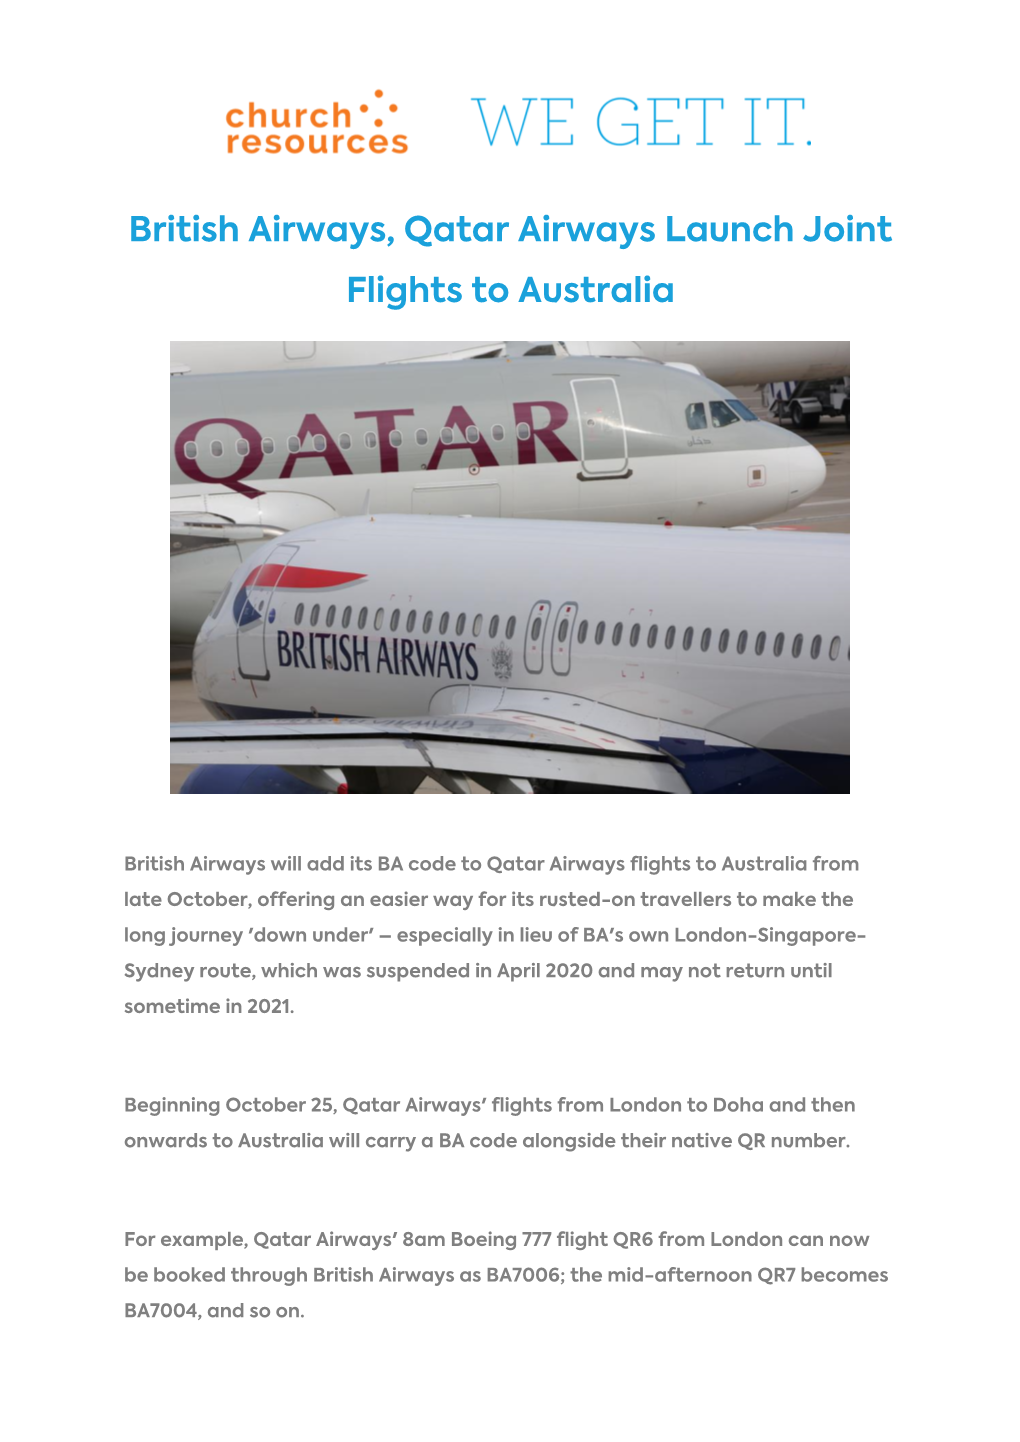 British Airways, Qatar Airways Launch Joint Flights to Australia